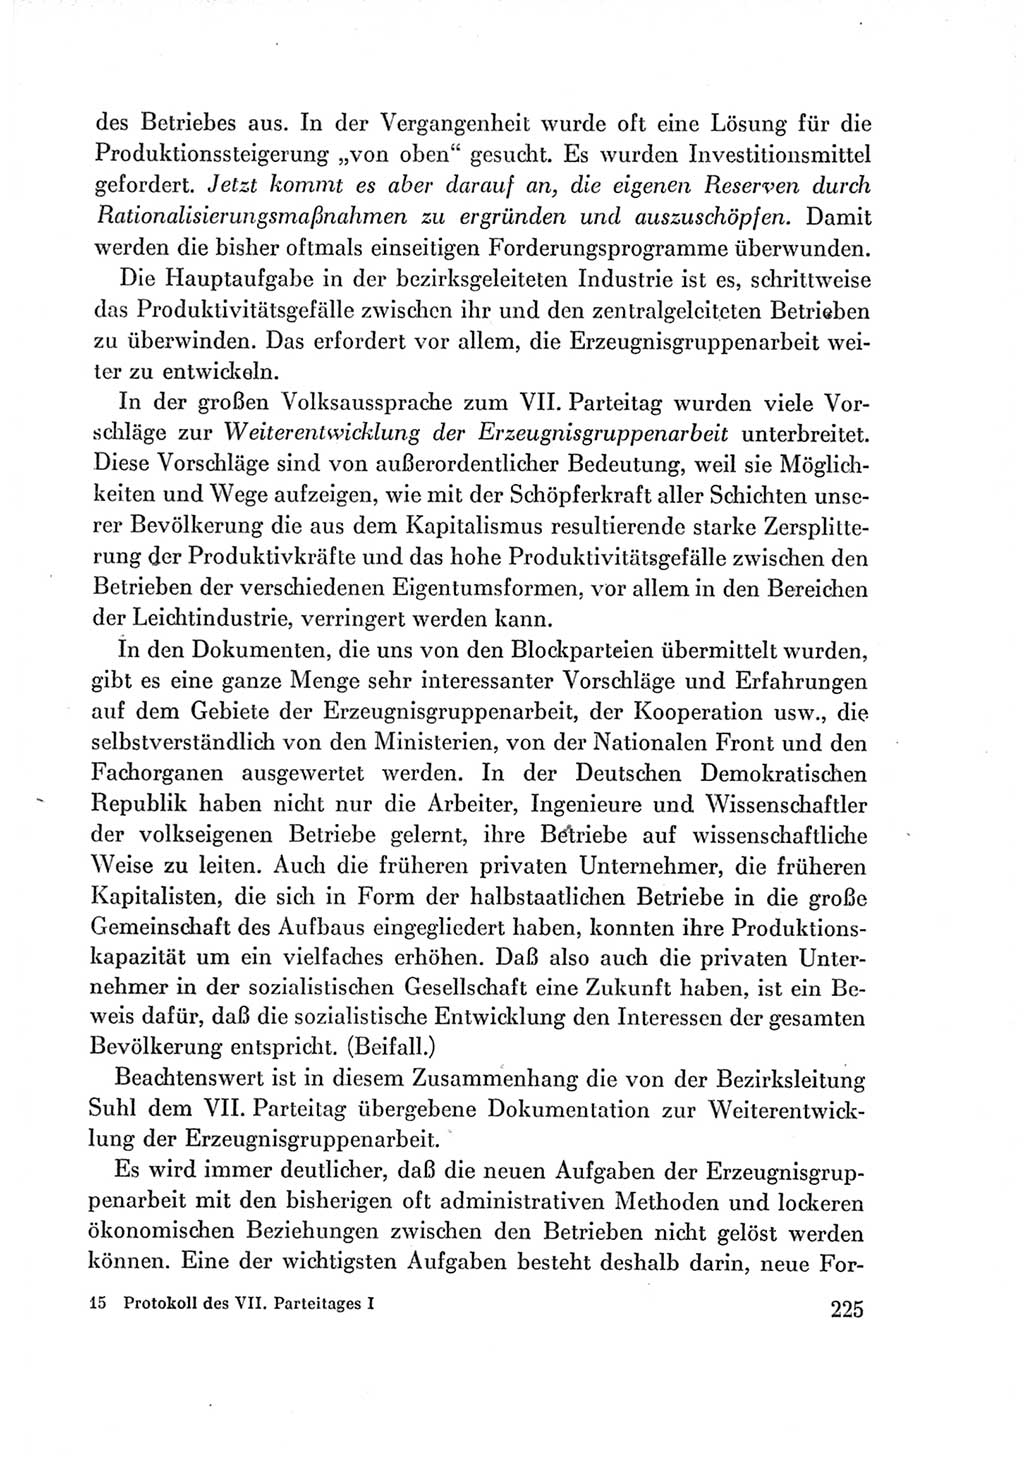 Protokoll der Verhandlungen des Ⅶ. Parteitages der Sozialistischen Einheitspartei Deutschlands (SED) [Deutsche Demokratische Republik (DDR)] 1967, Band Ⅰ, Seite 225 (Prot. Verh. Ⅶ. PT SED DDR 1967, Bd. Ⅰ, S. 225)